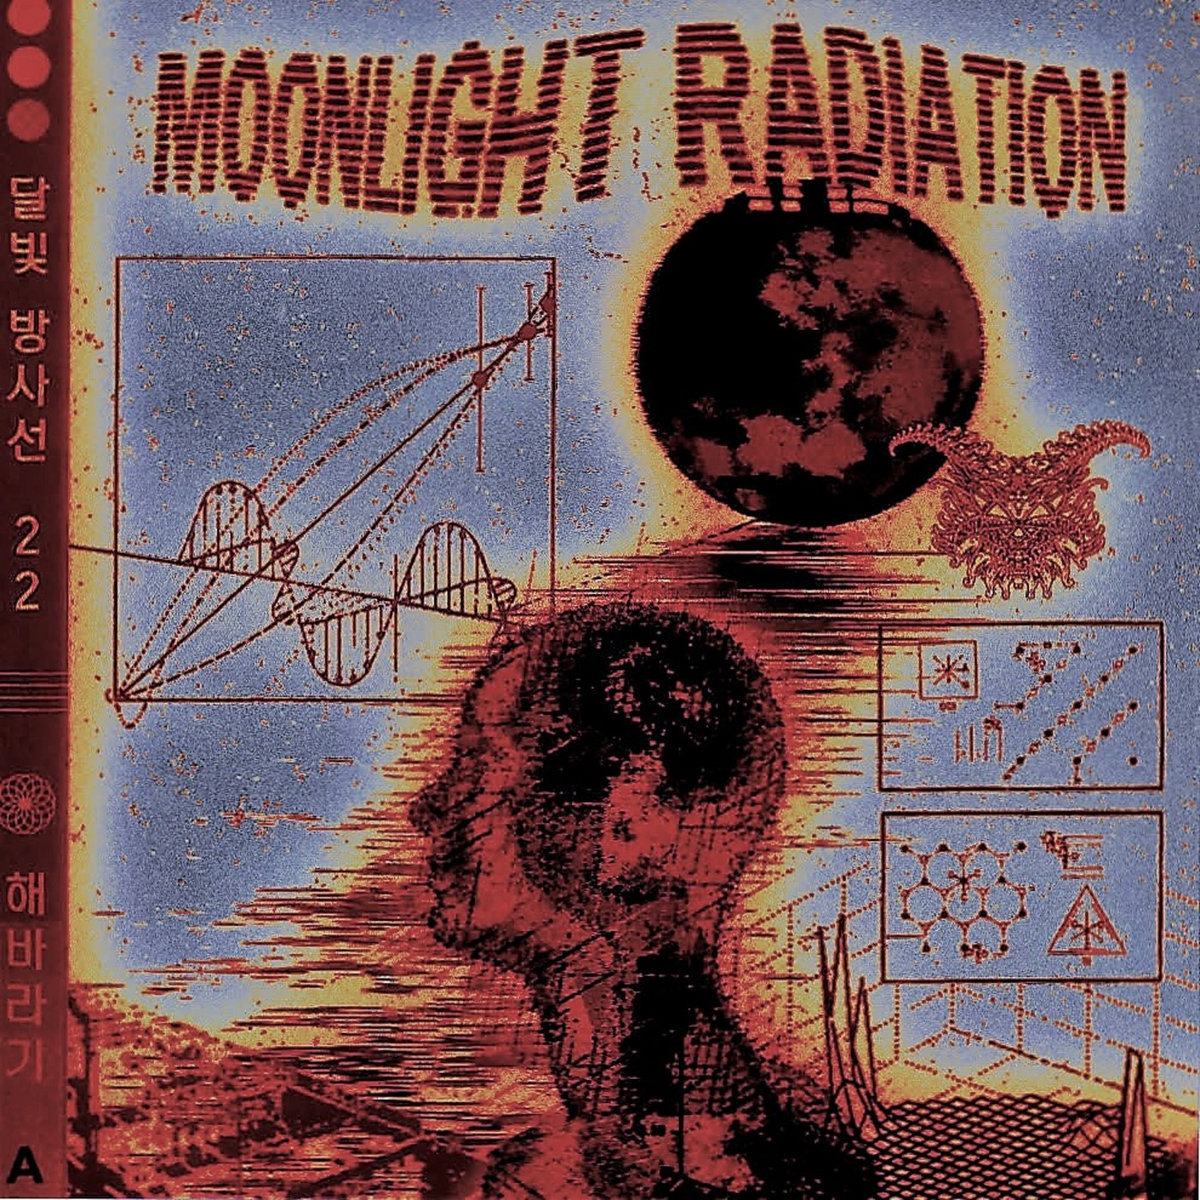 Album associé à la Transcending the Relative par Verdant & Finback. Jak3 - Moonlight Radiation